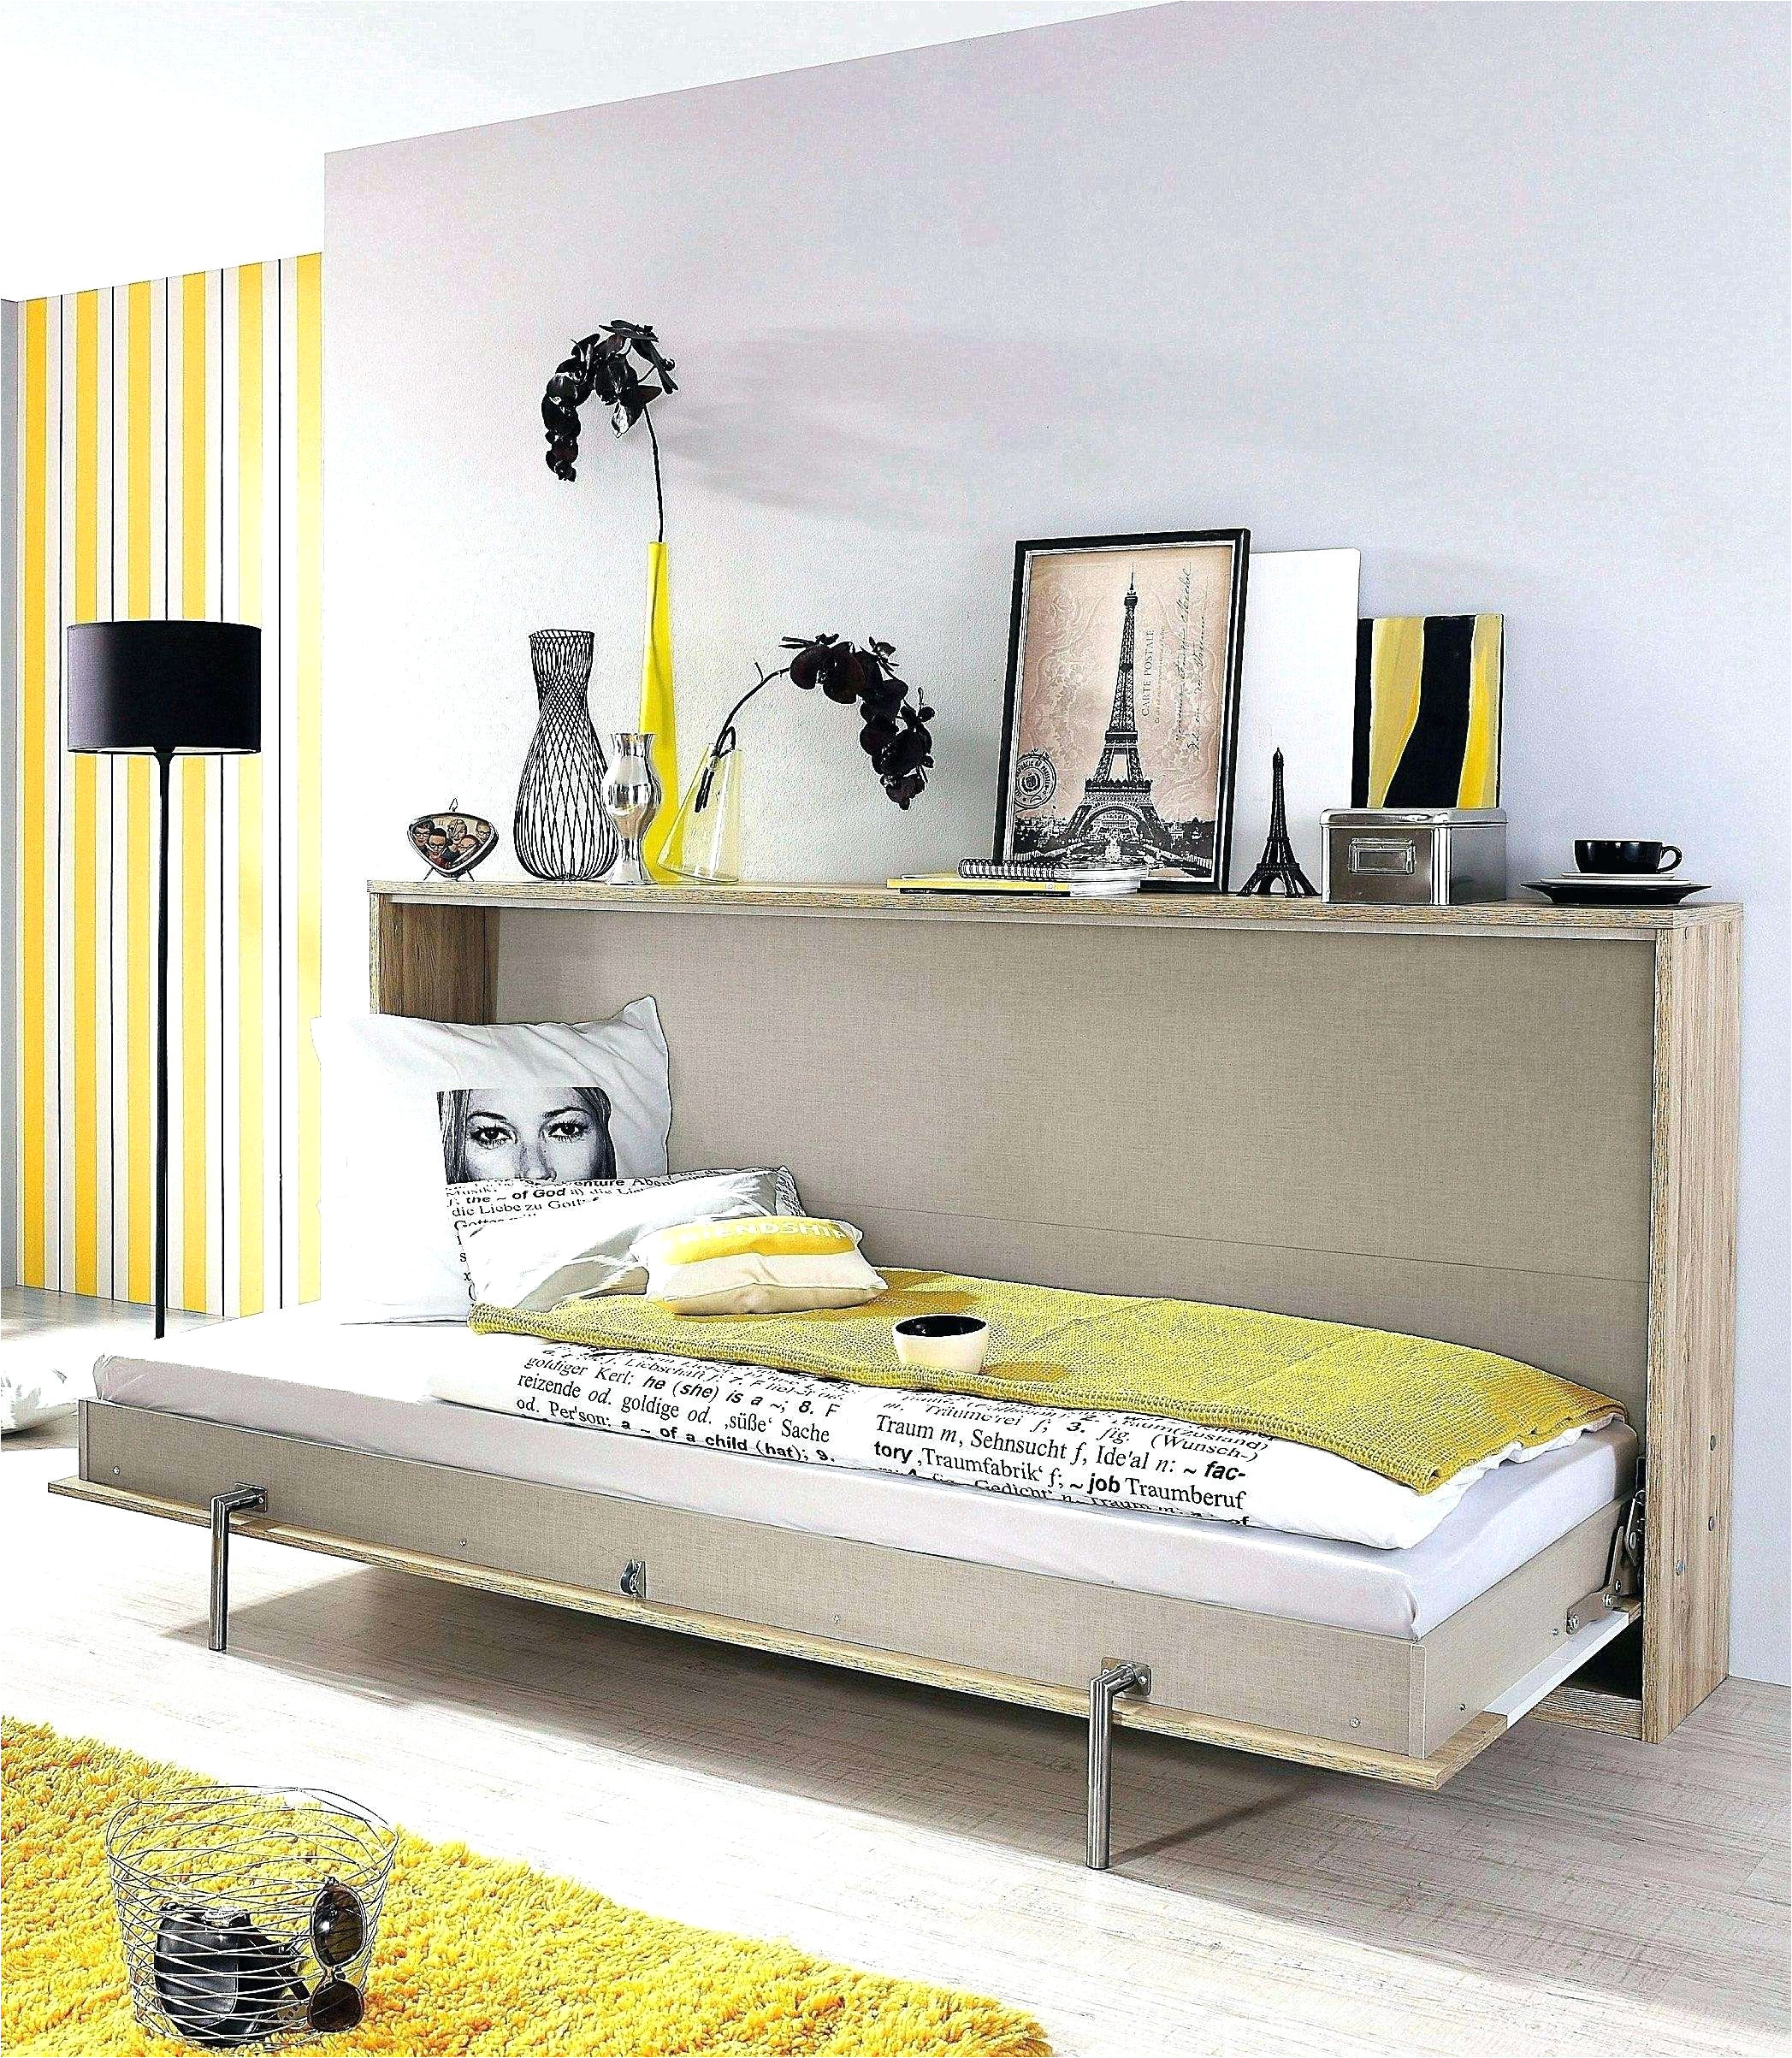 Ikea Wicker Bed Frame Instructions Brimnes Bett Anleitung Schon Brimnes Bed Frame with Storage White